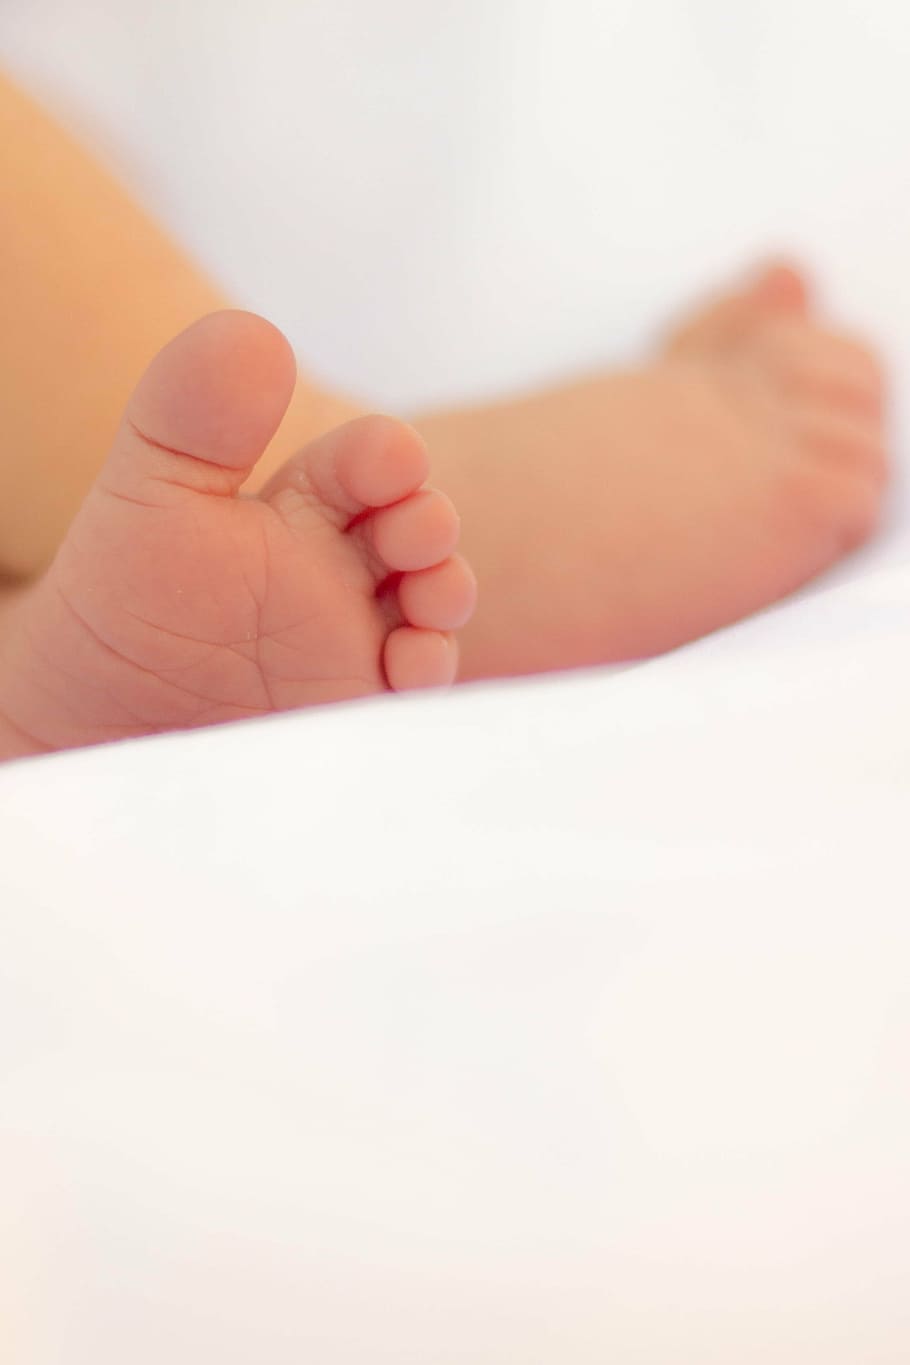 赤ちゃんの足, 人生, 人々, 人間, 赤ちゃん, 子供, 幼児, 足, 誕生, 人間の手